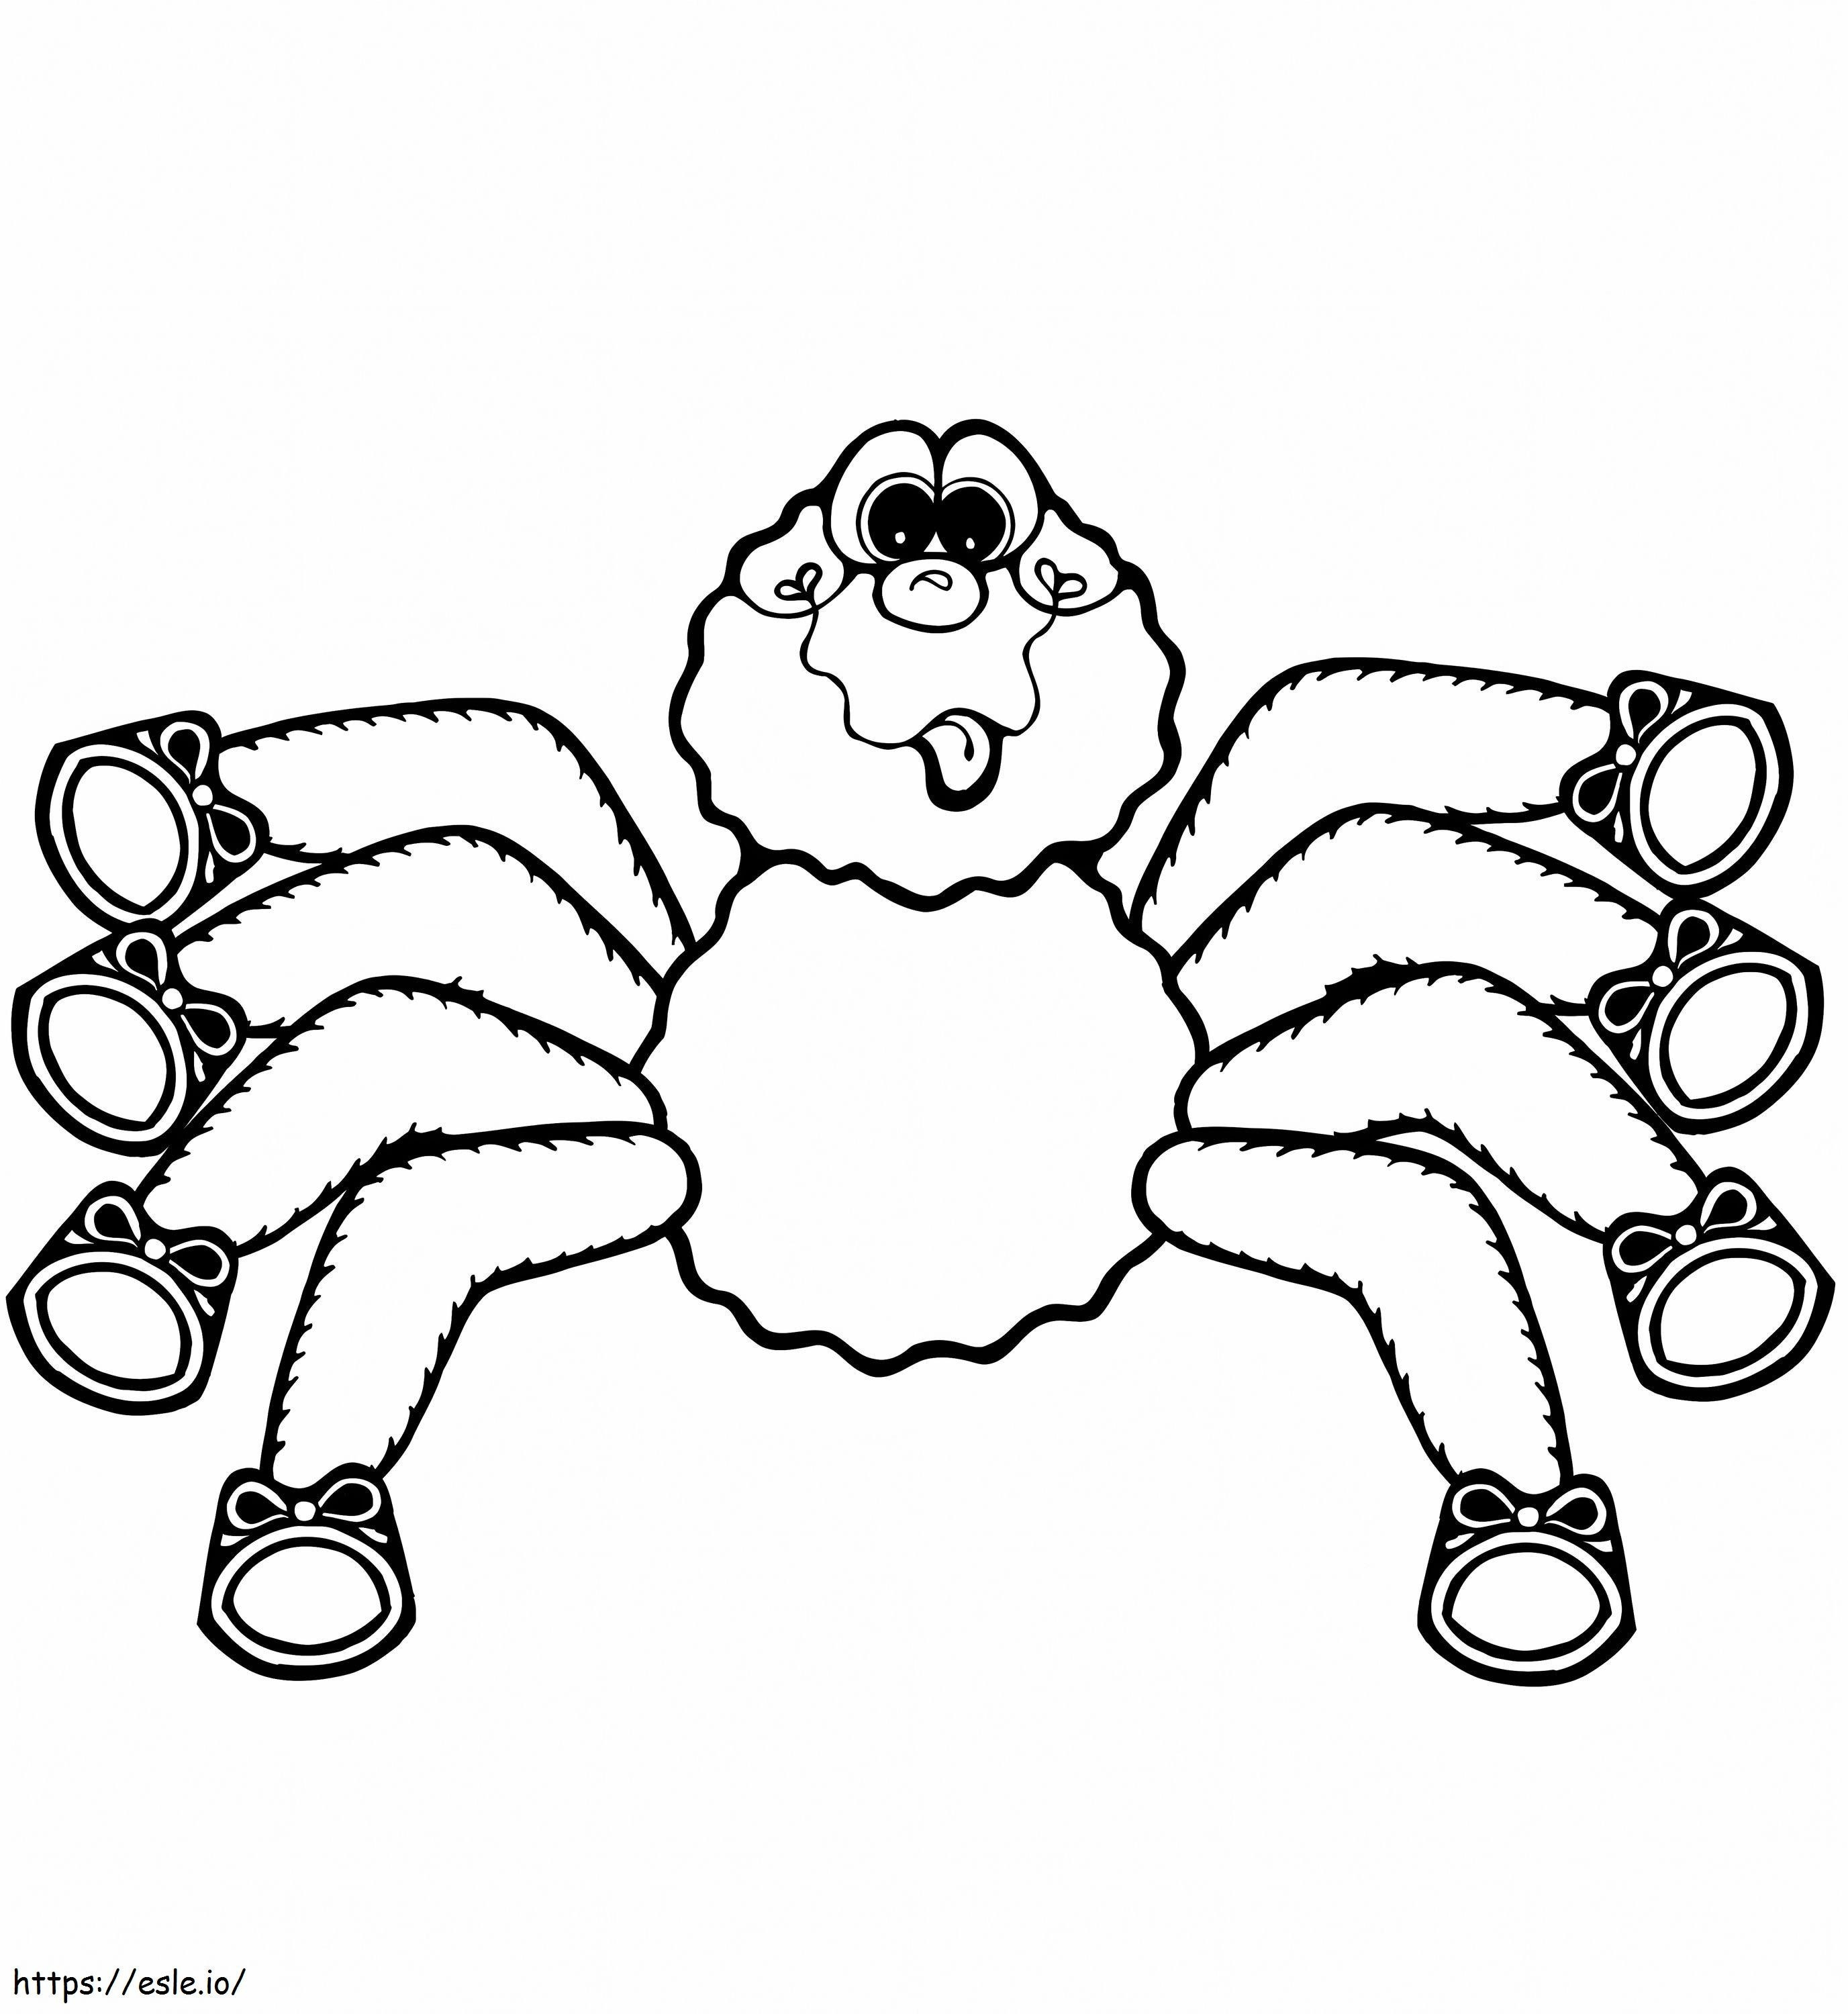 1545184994 Păianjen desenat 1 de colorat